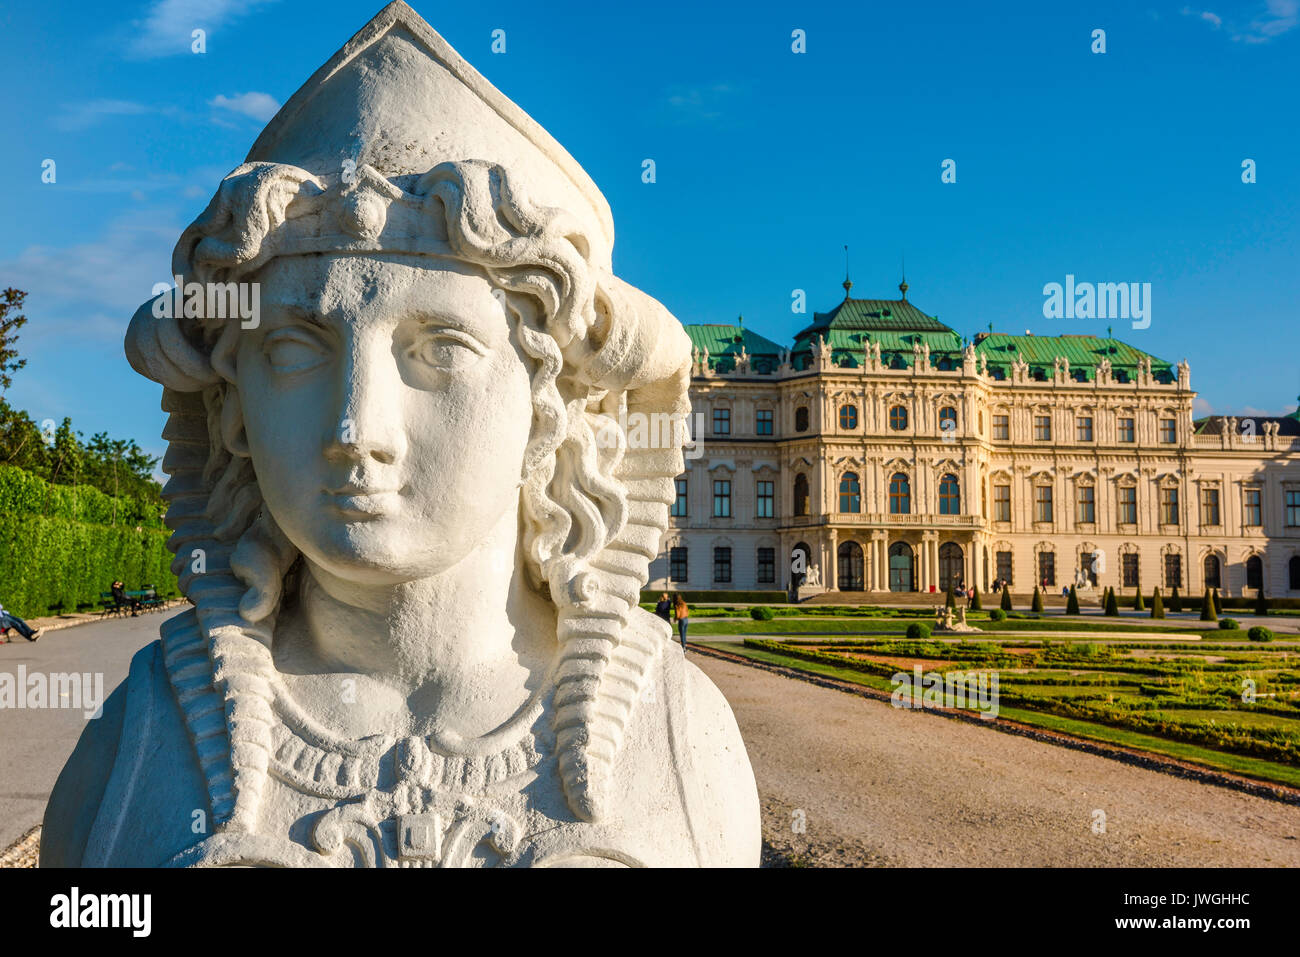 Schloss Belvedere Wien, Leiter der griechisch-römischen Stil sphinx Statue in der formalen Gärten von Schloss Belvedere in Wien, Österreich. Stockfoto